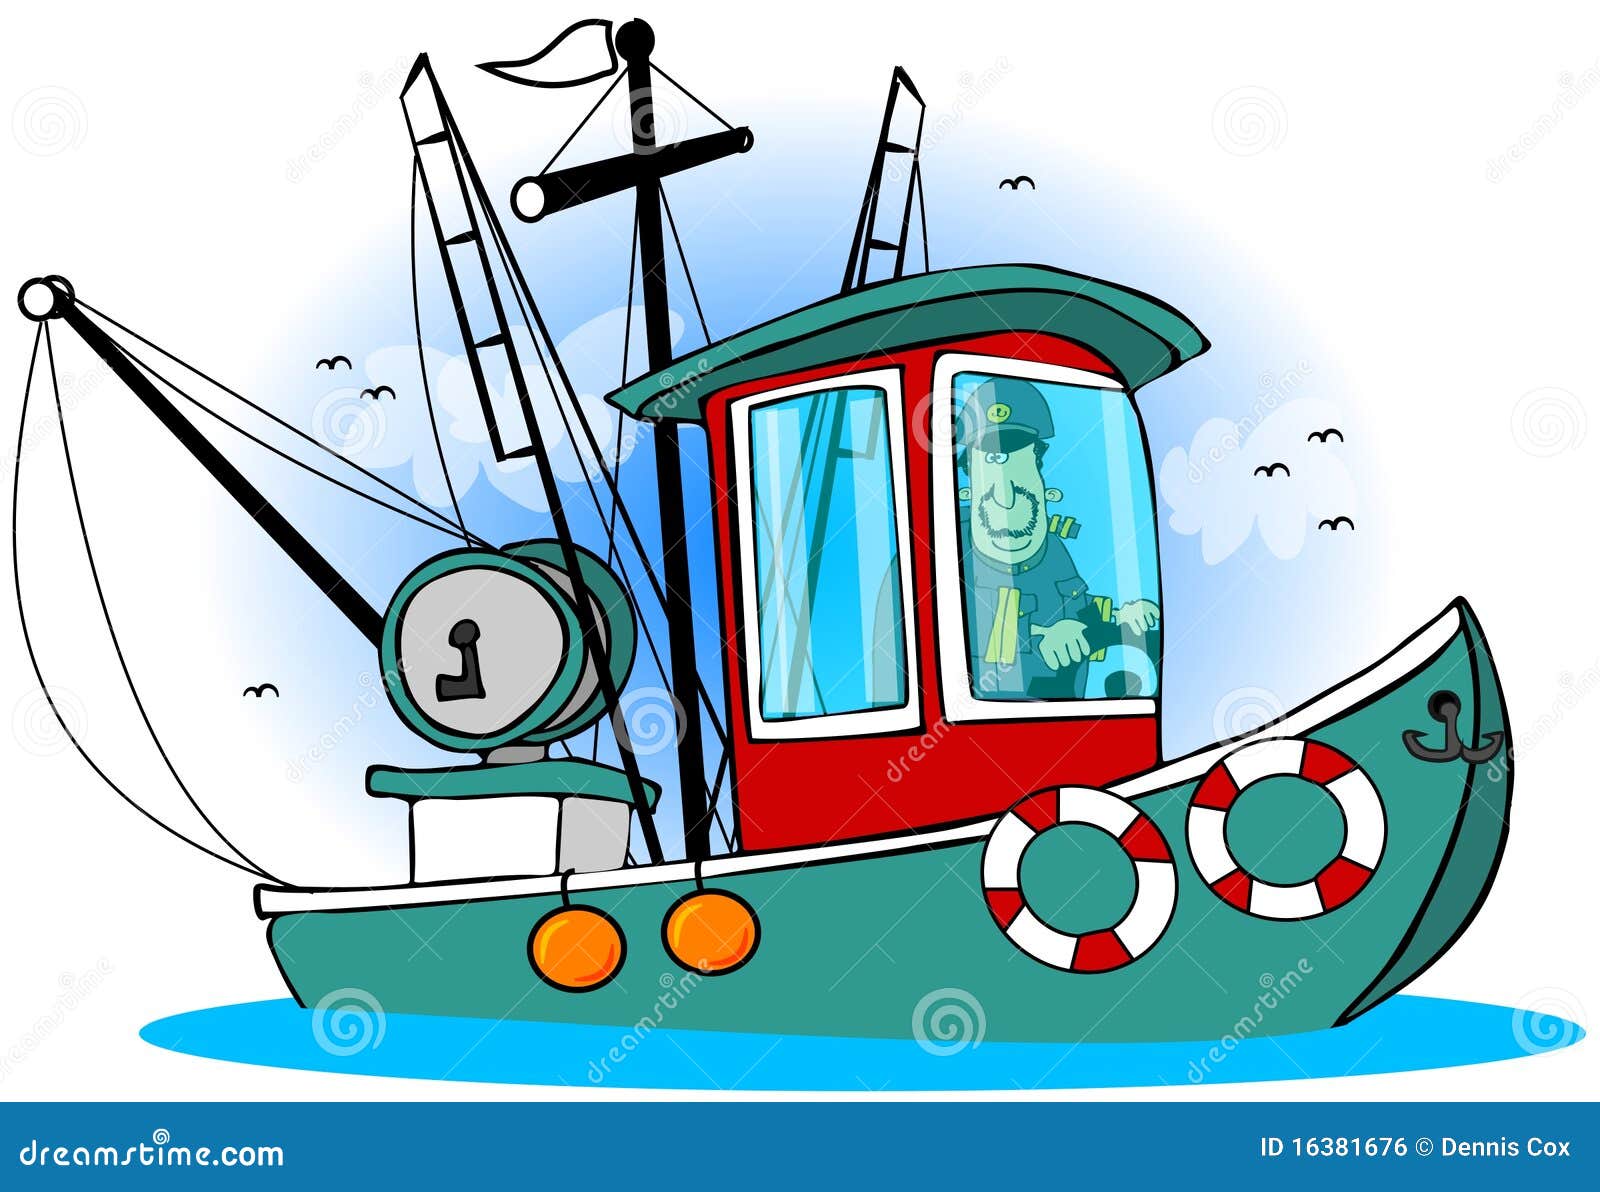 Quem está segurando o leme do seu barco?